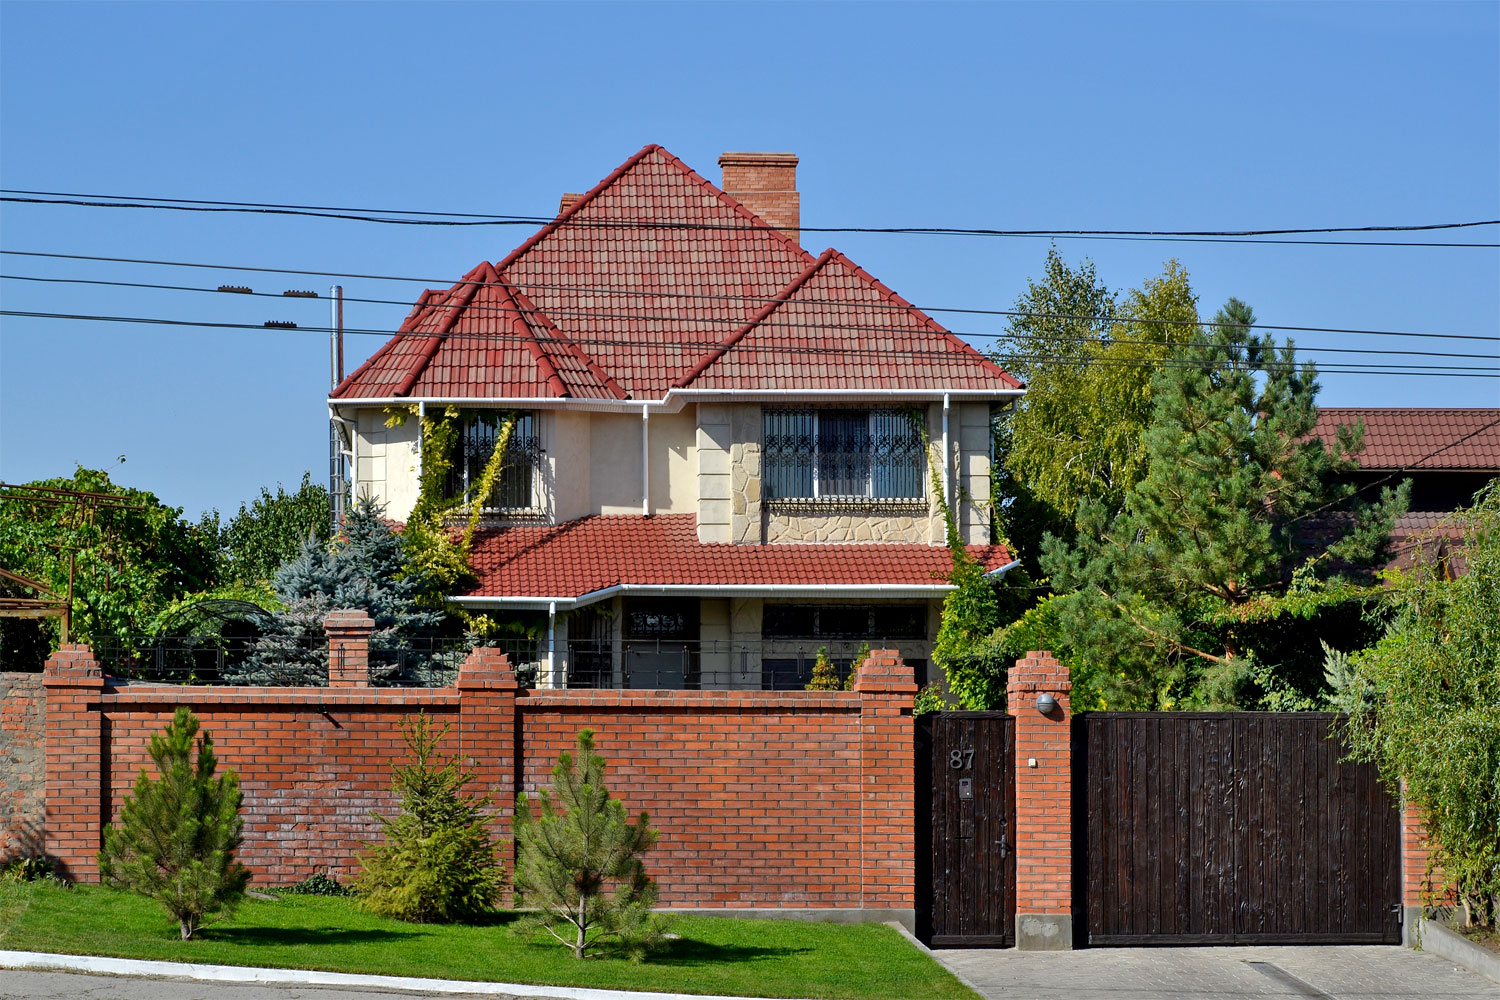 Купить дом одесская область